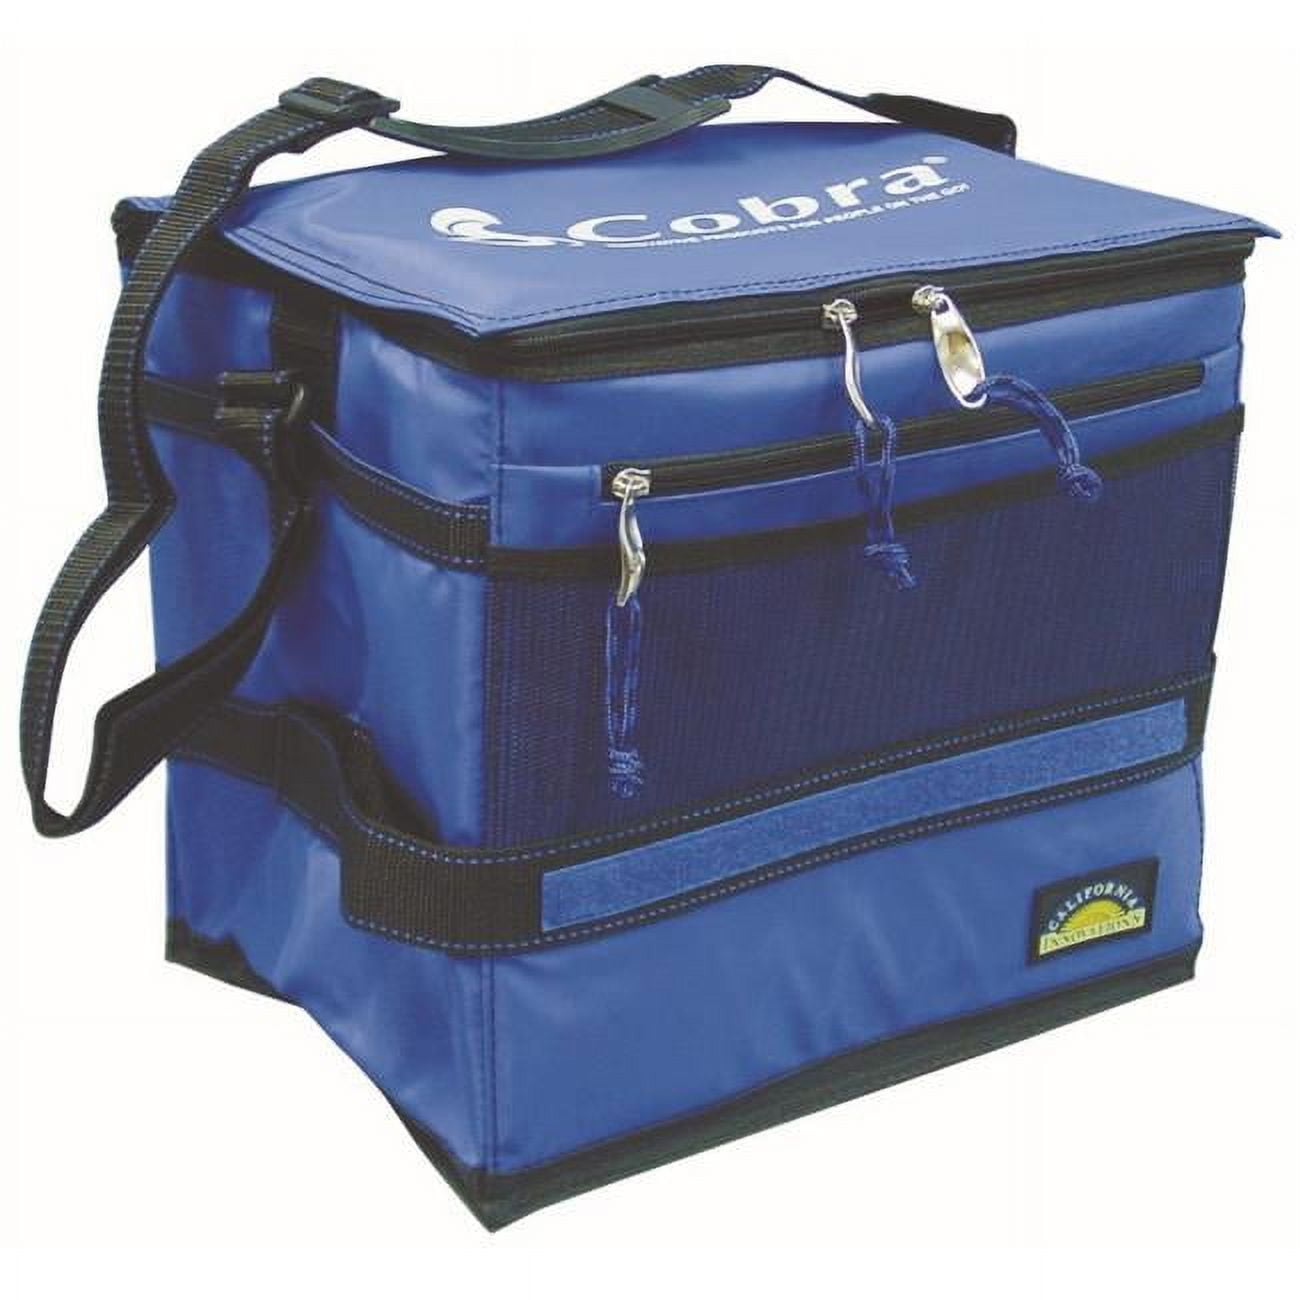 Cobracooler Limited Edition Portable Cobra Cooler